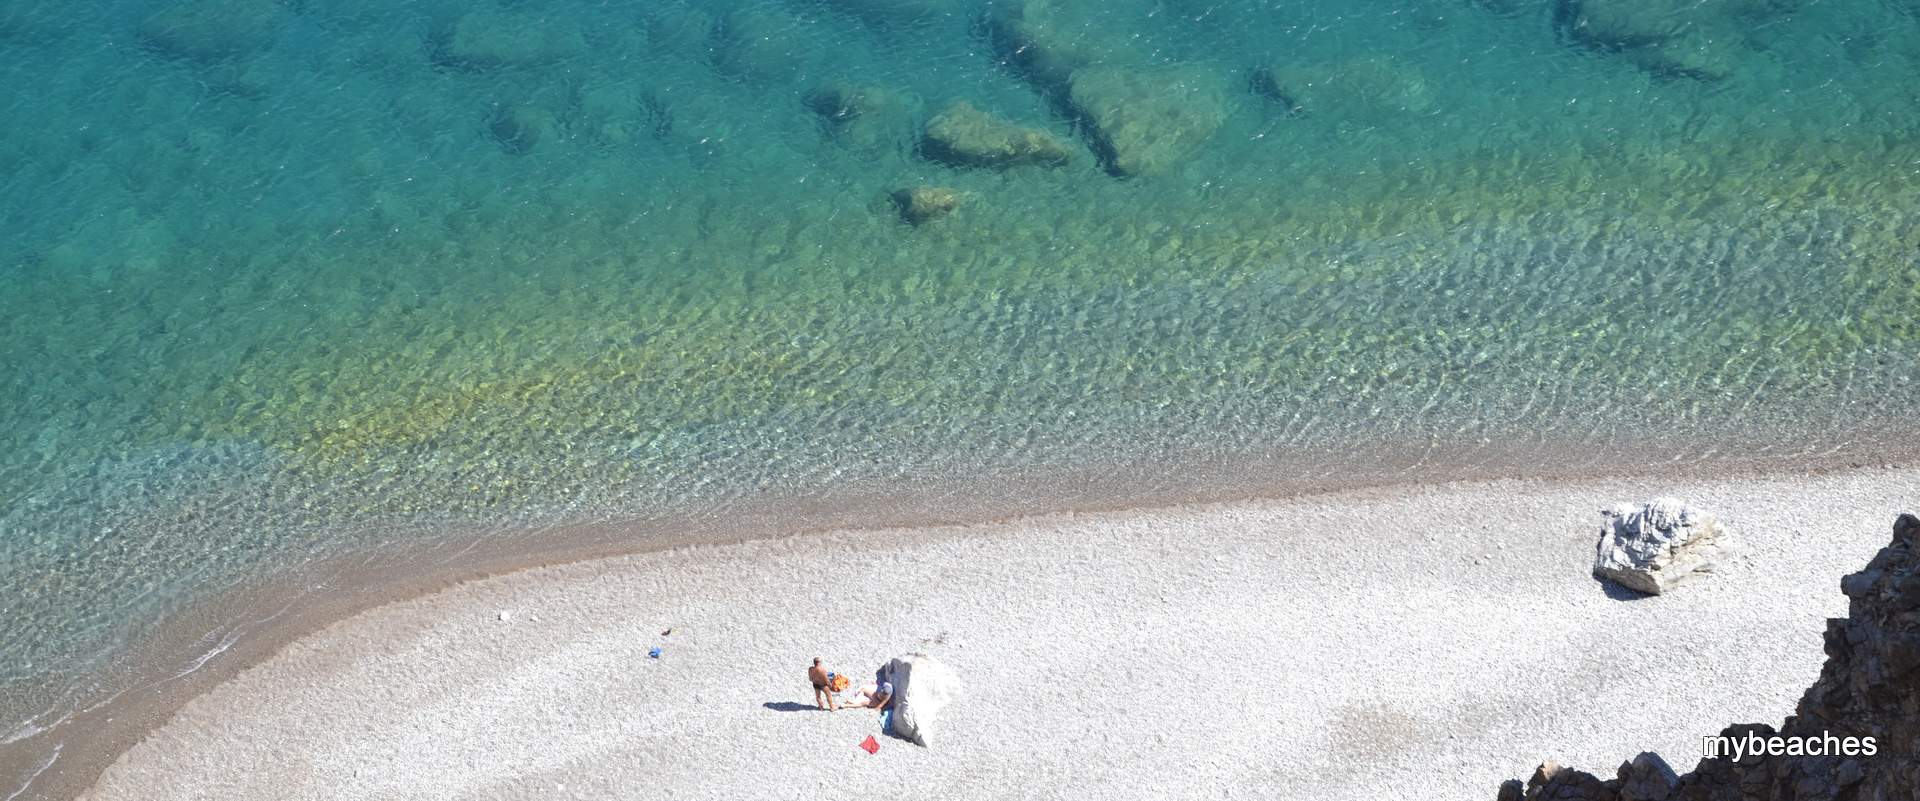 Μαριδάκι παραλία, Ηράκλειο, Κρήτη, Ελλάδα